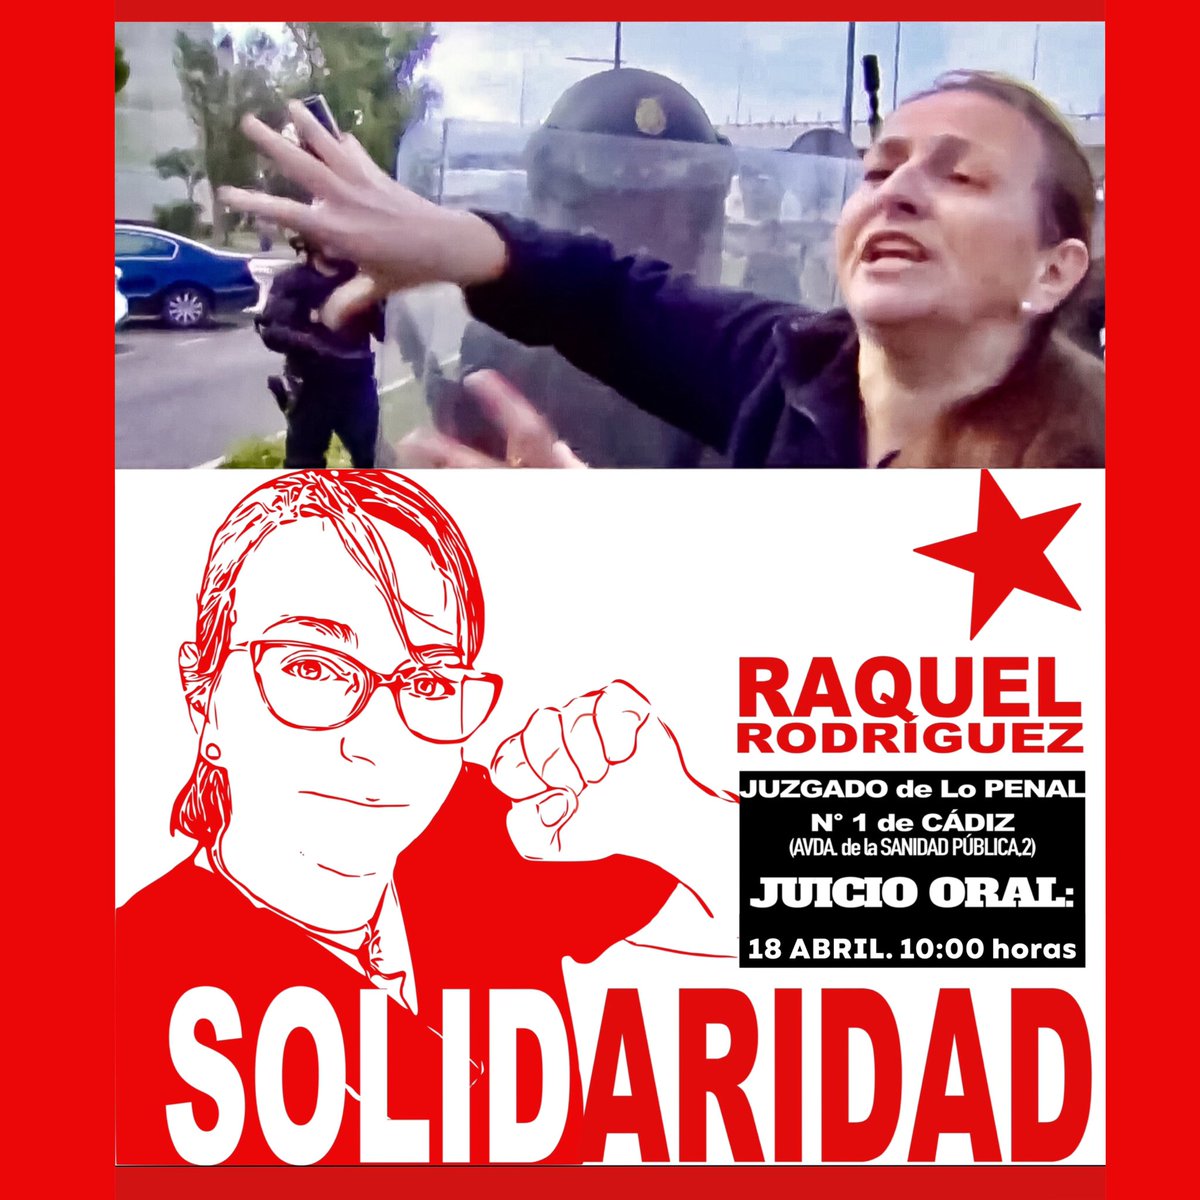 ‼️Solidaridad con @RaquelRp39 Represaliada por su valentía frente al poder, las porras y la tanqueta.
¡Más valientes cómo ella!
Huelga de Metal, Cádiz.
18 de Abril, 10:00h Juzgados de lo Penal de Cádiz. No solo juzgan a Raquel, juzgan a todo un pueblo.
#NiRepresionNiRepresalias